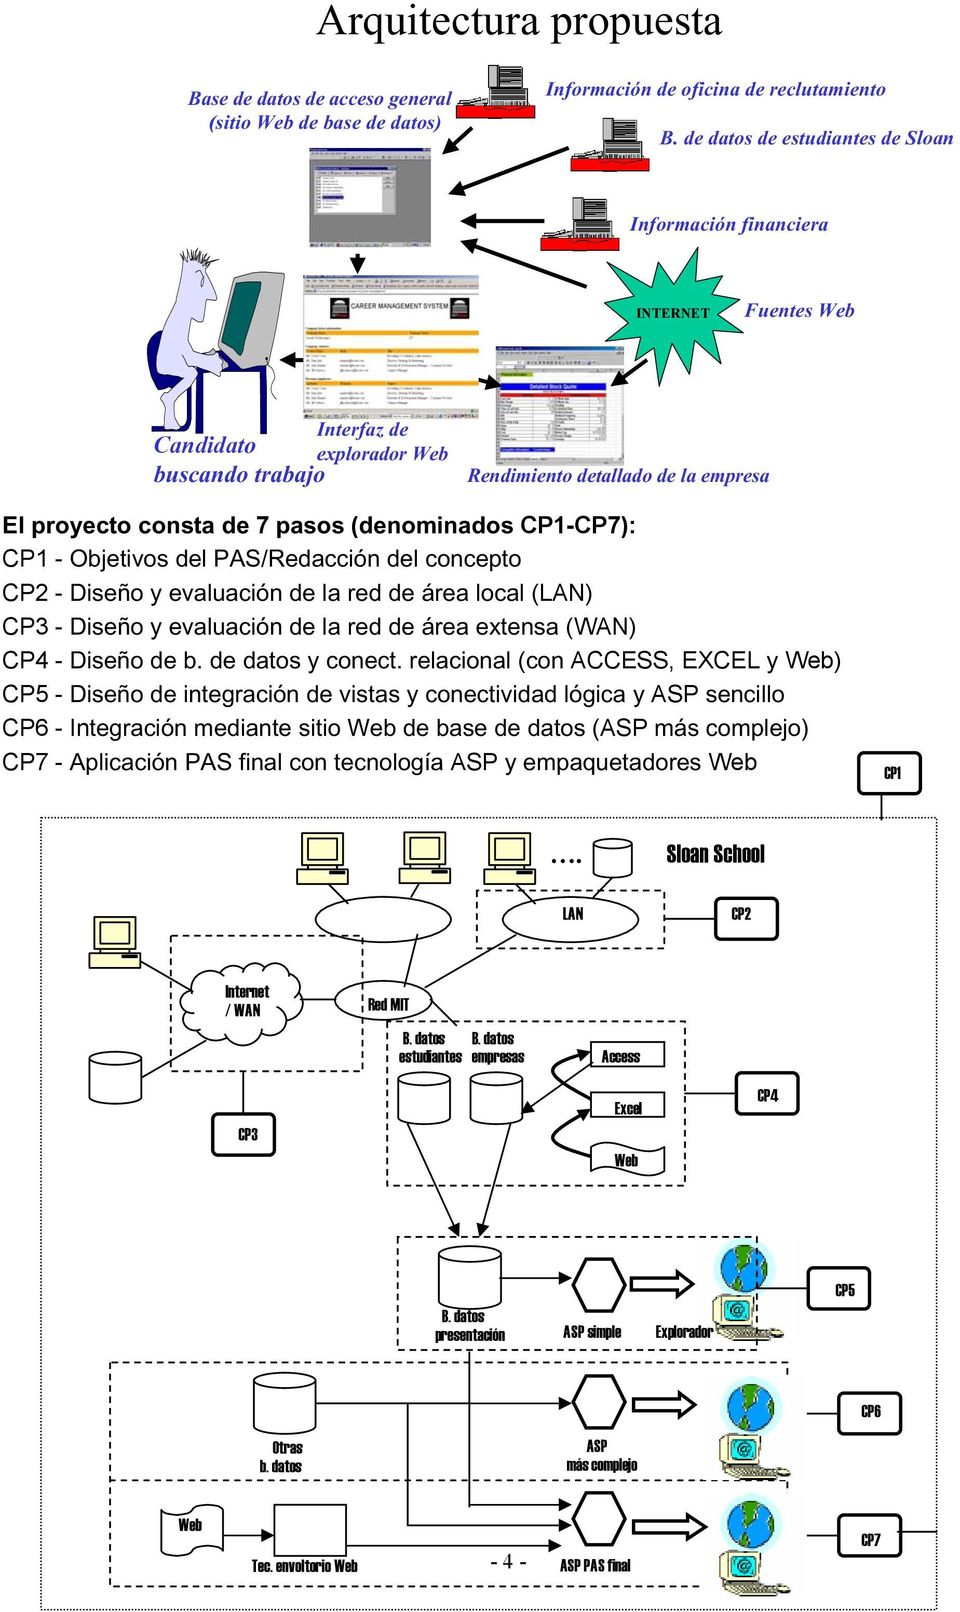 (denominados CP1-CP7): CP1 - Objetivos del PAS/Redacción del concepto CP2 - Diseño y evaluación de la red de área local (LAN) CP3 - Diseño y evaluación de la red de área extensa (WAN) CP4 - Diseño de